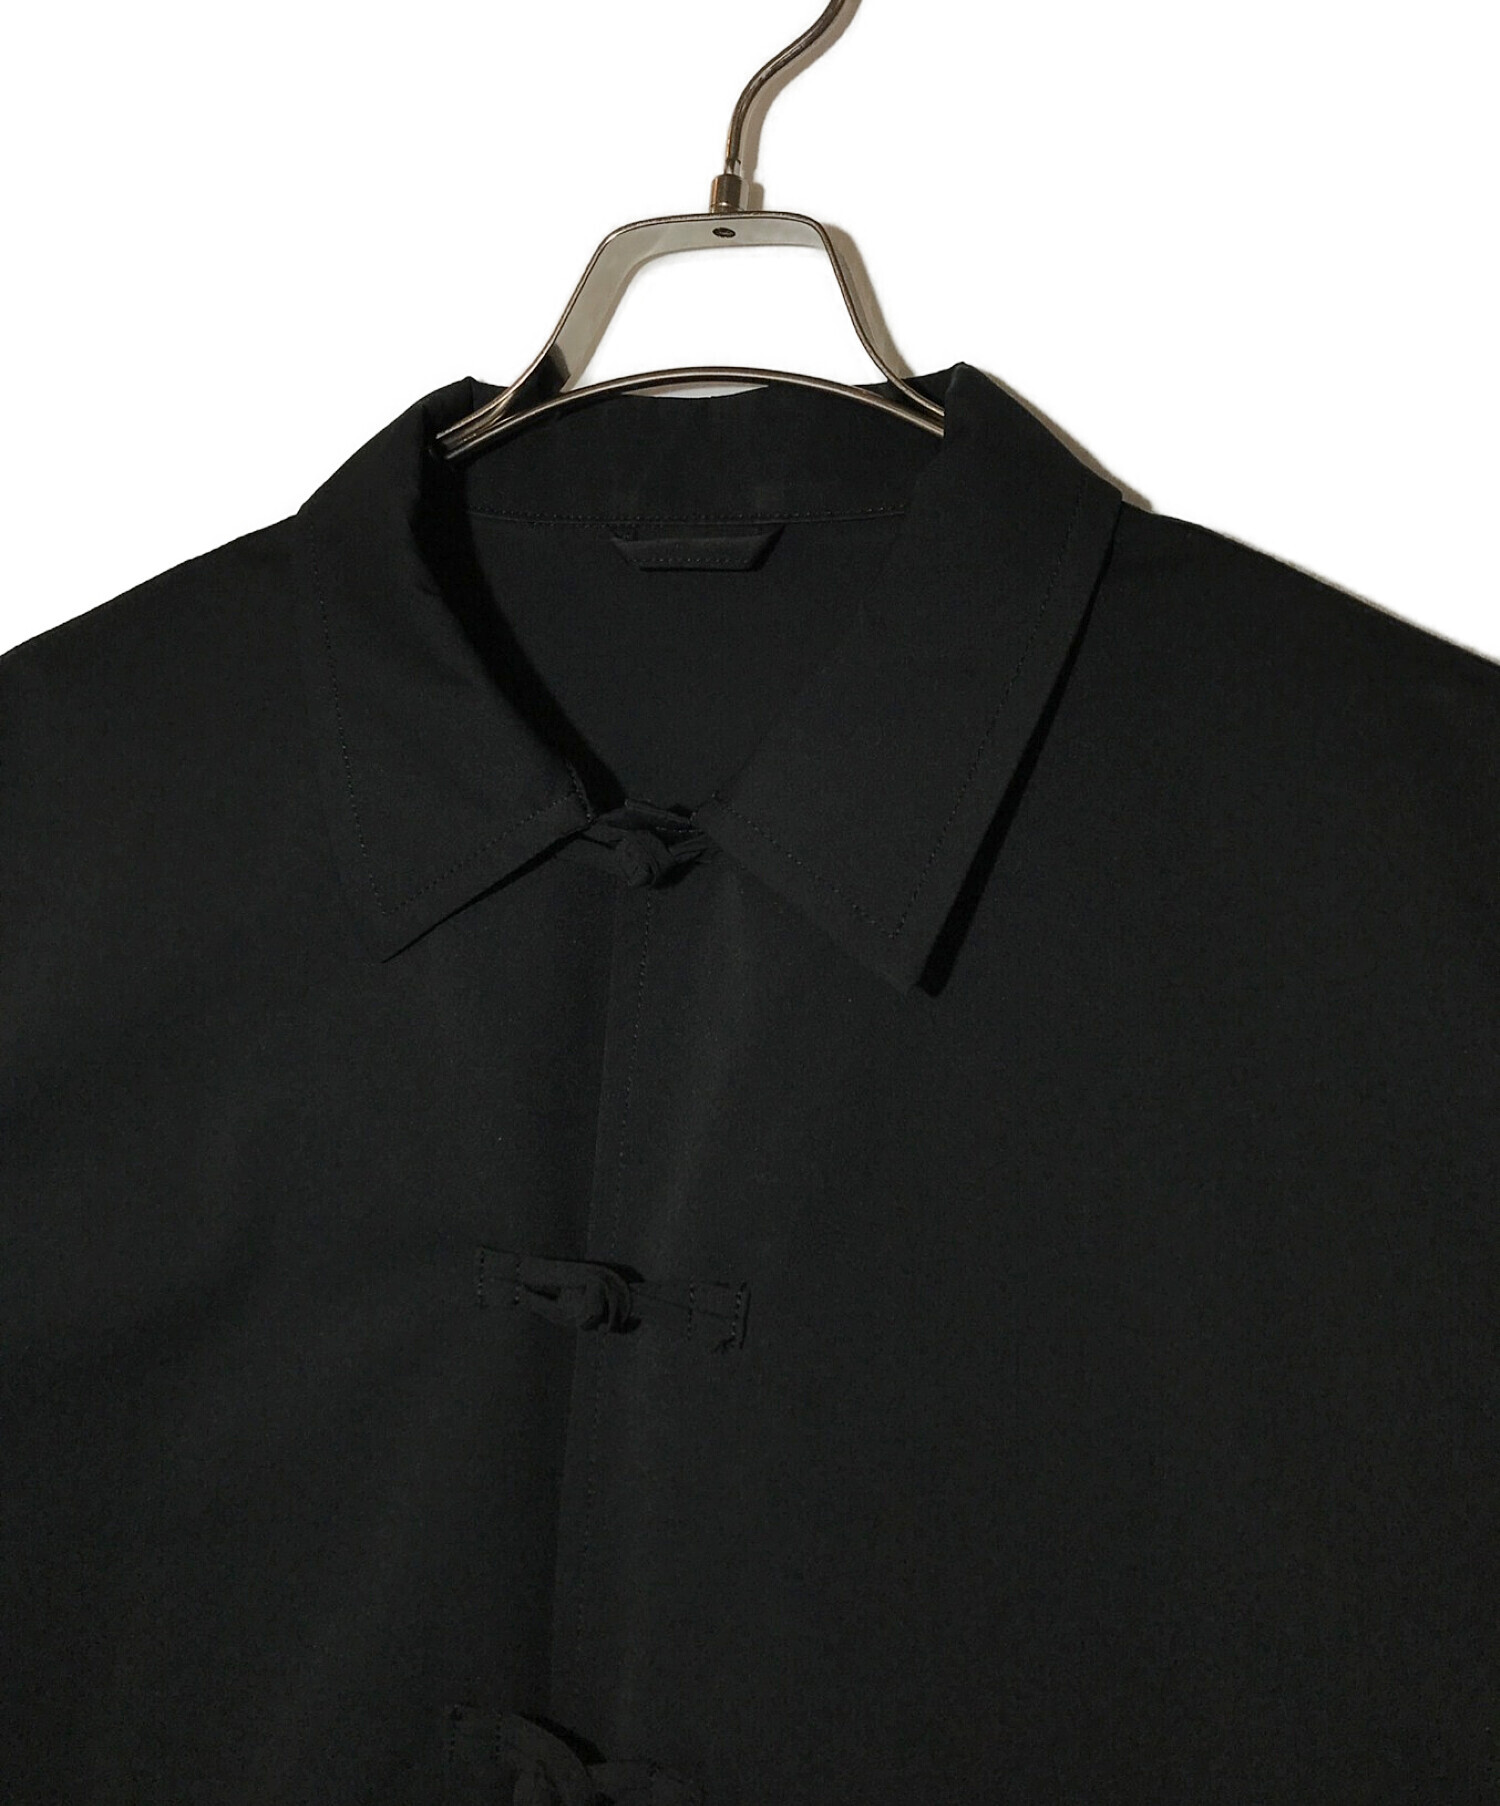 SOPH. (ソフネット) ナイロンチャイナジャケット ブラック サイズ:Ⅿ